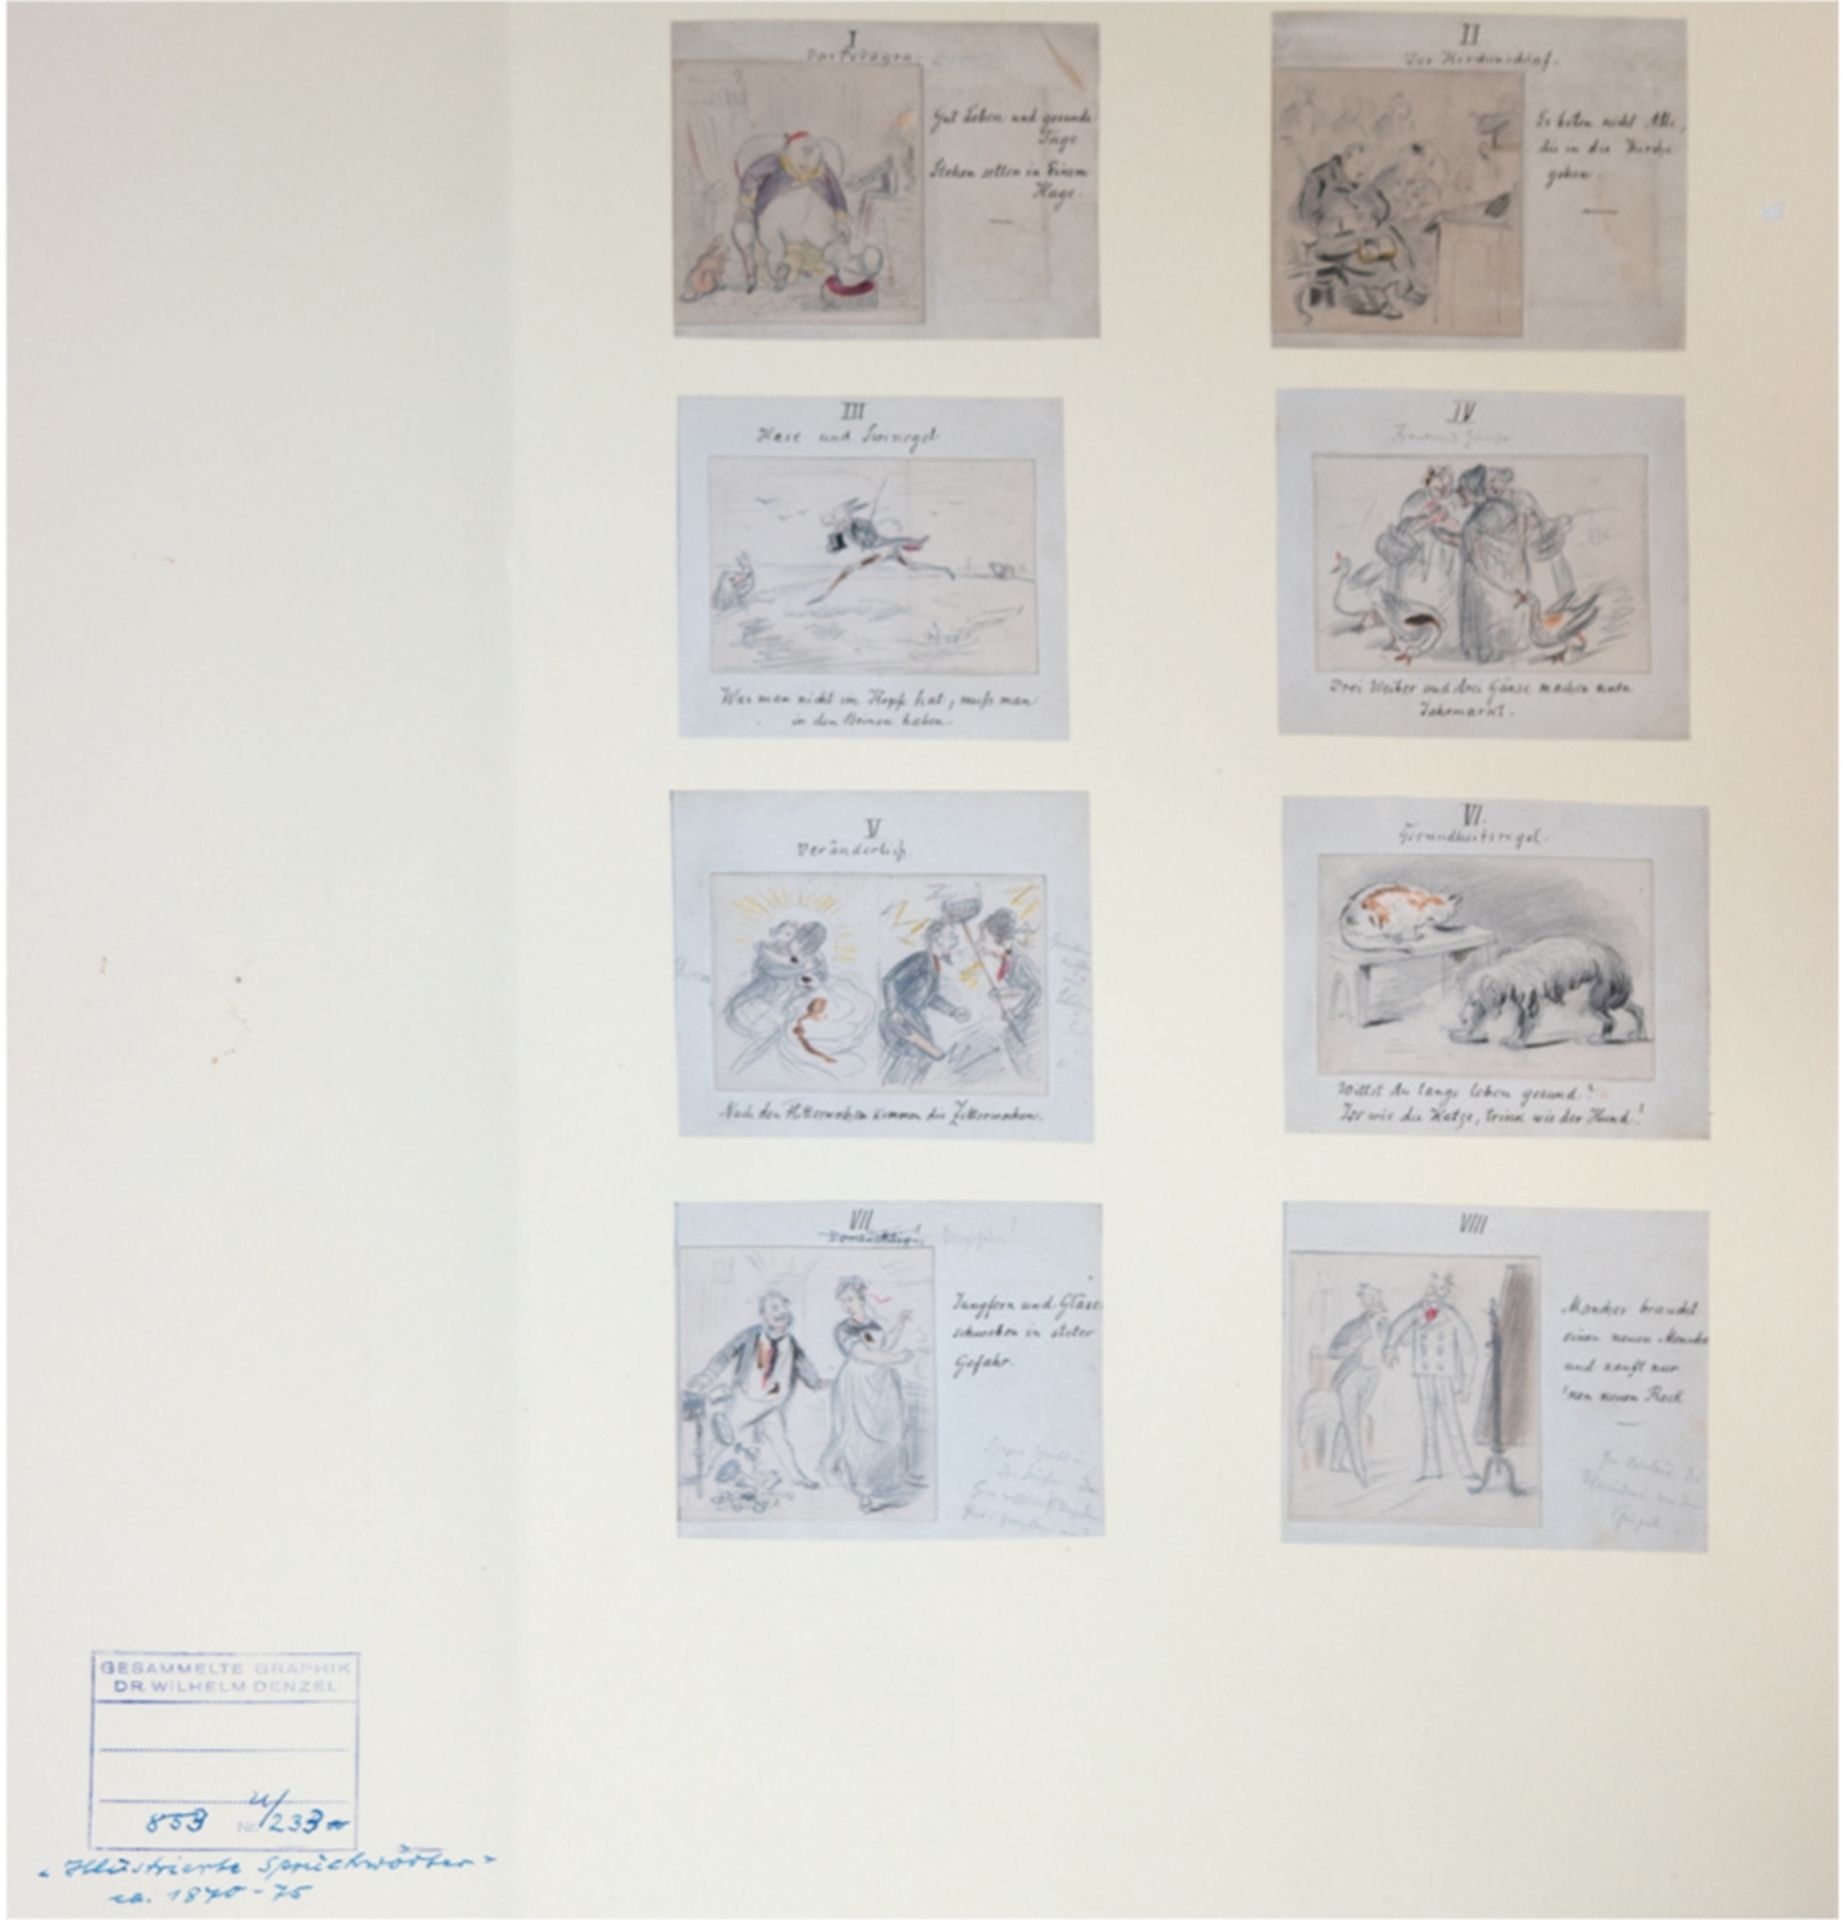 Mappe mit 8 kl. Zeichnungen "Illustrationen", Zeichnungen je 7x14 cm, betitelt in altdeutscher Schr